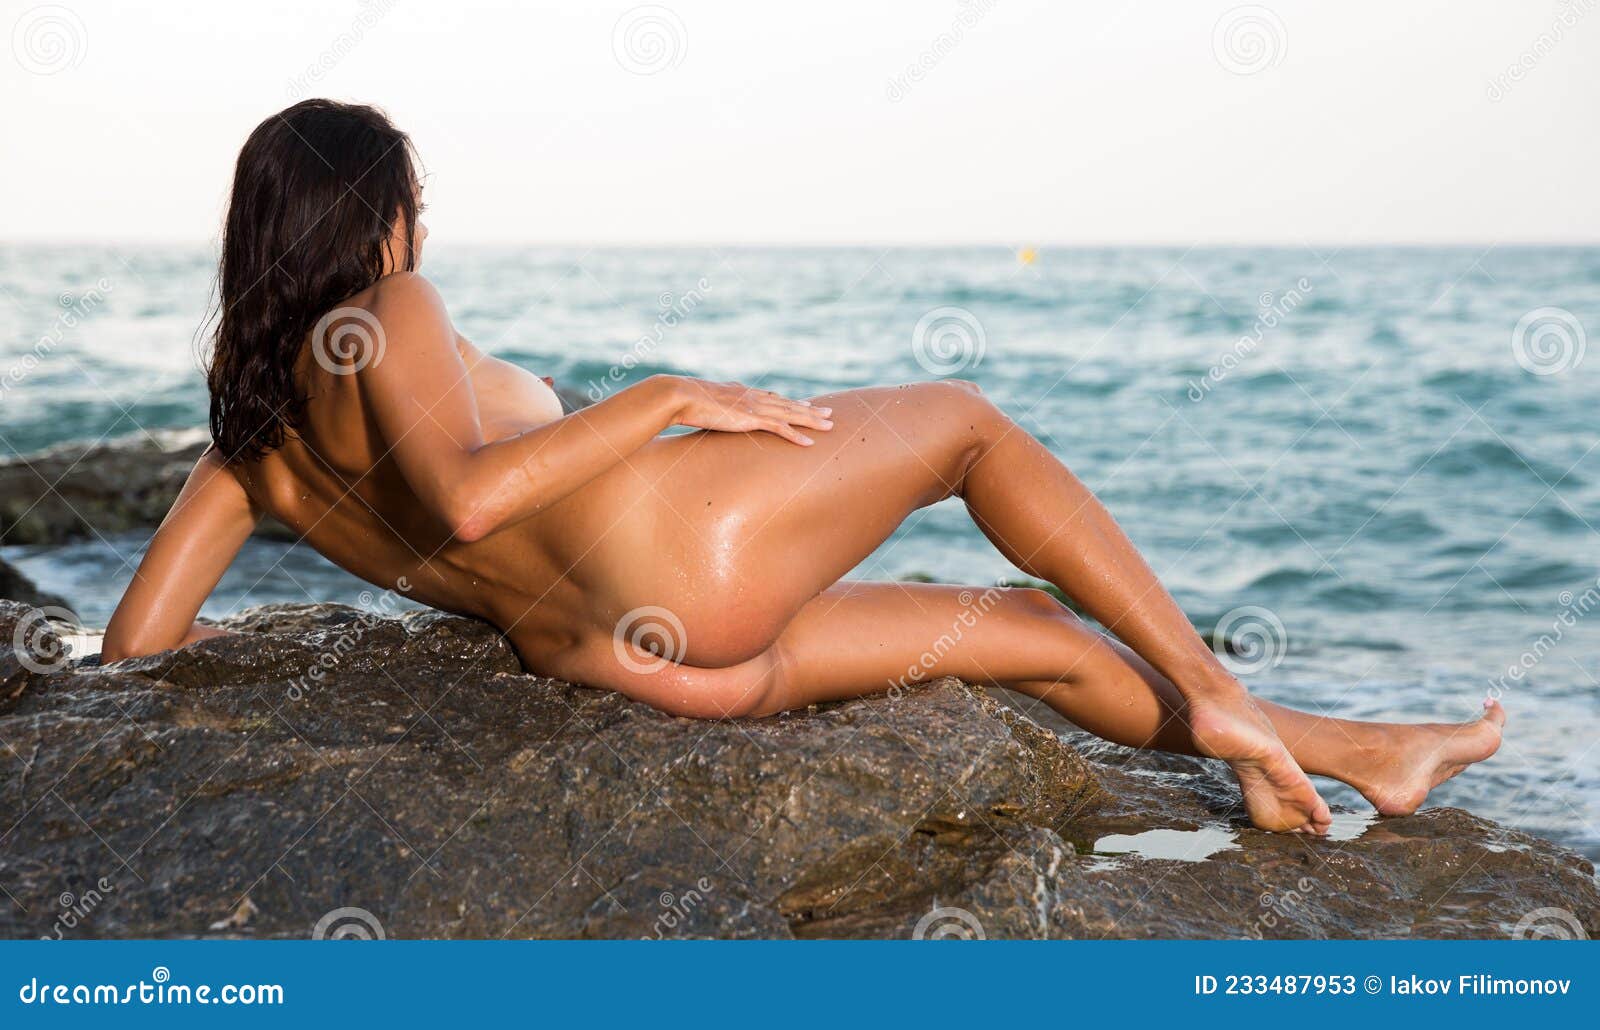 Sea nude photos